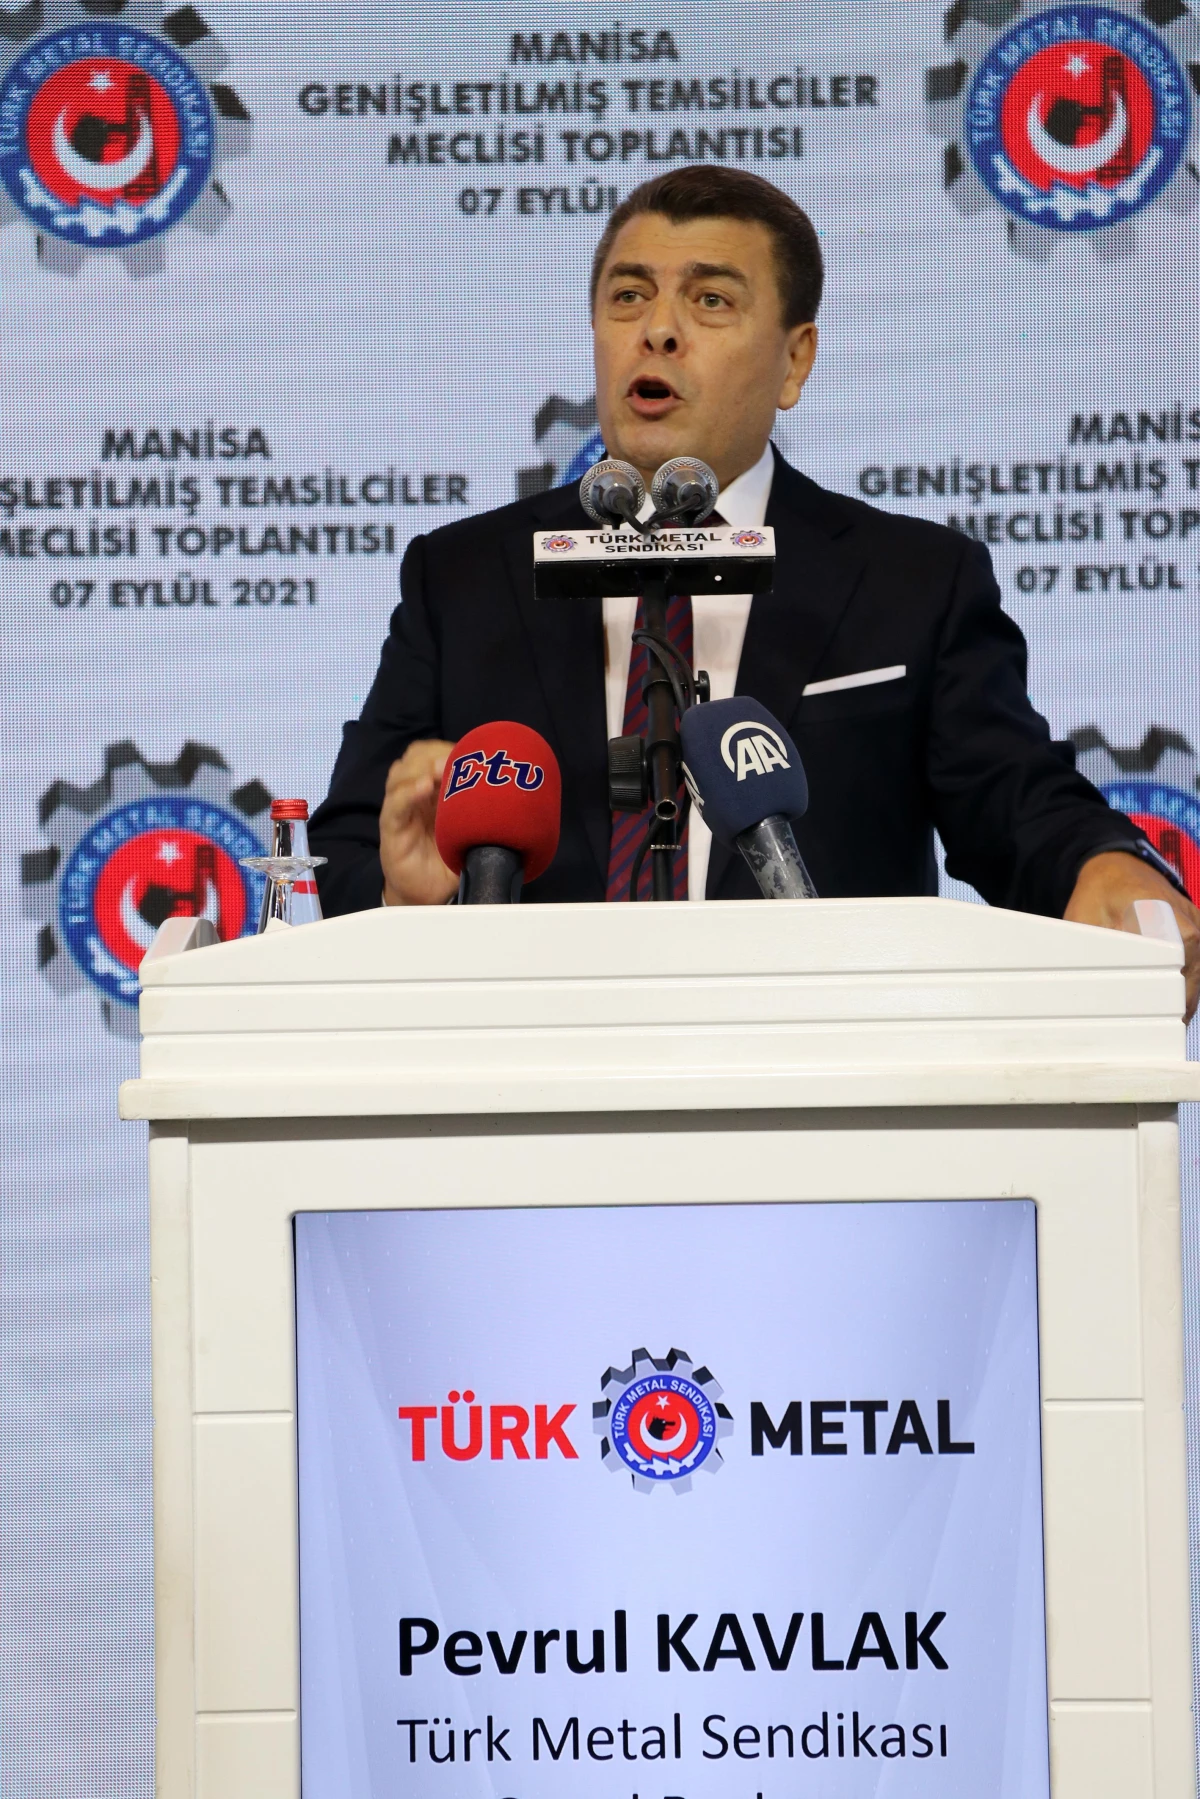 Türk Metal Sendikası "Genişletilmiş Temsilciler Meclisi" toplandı